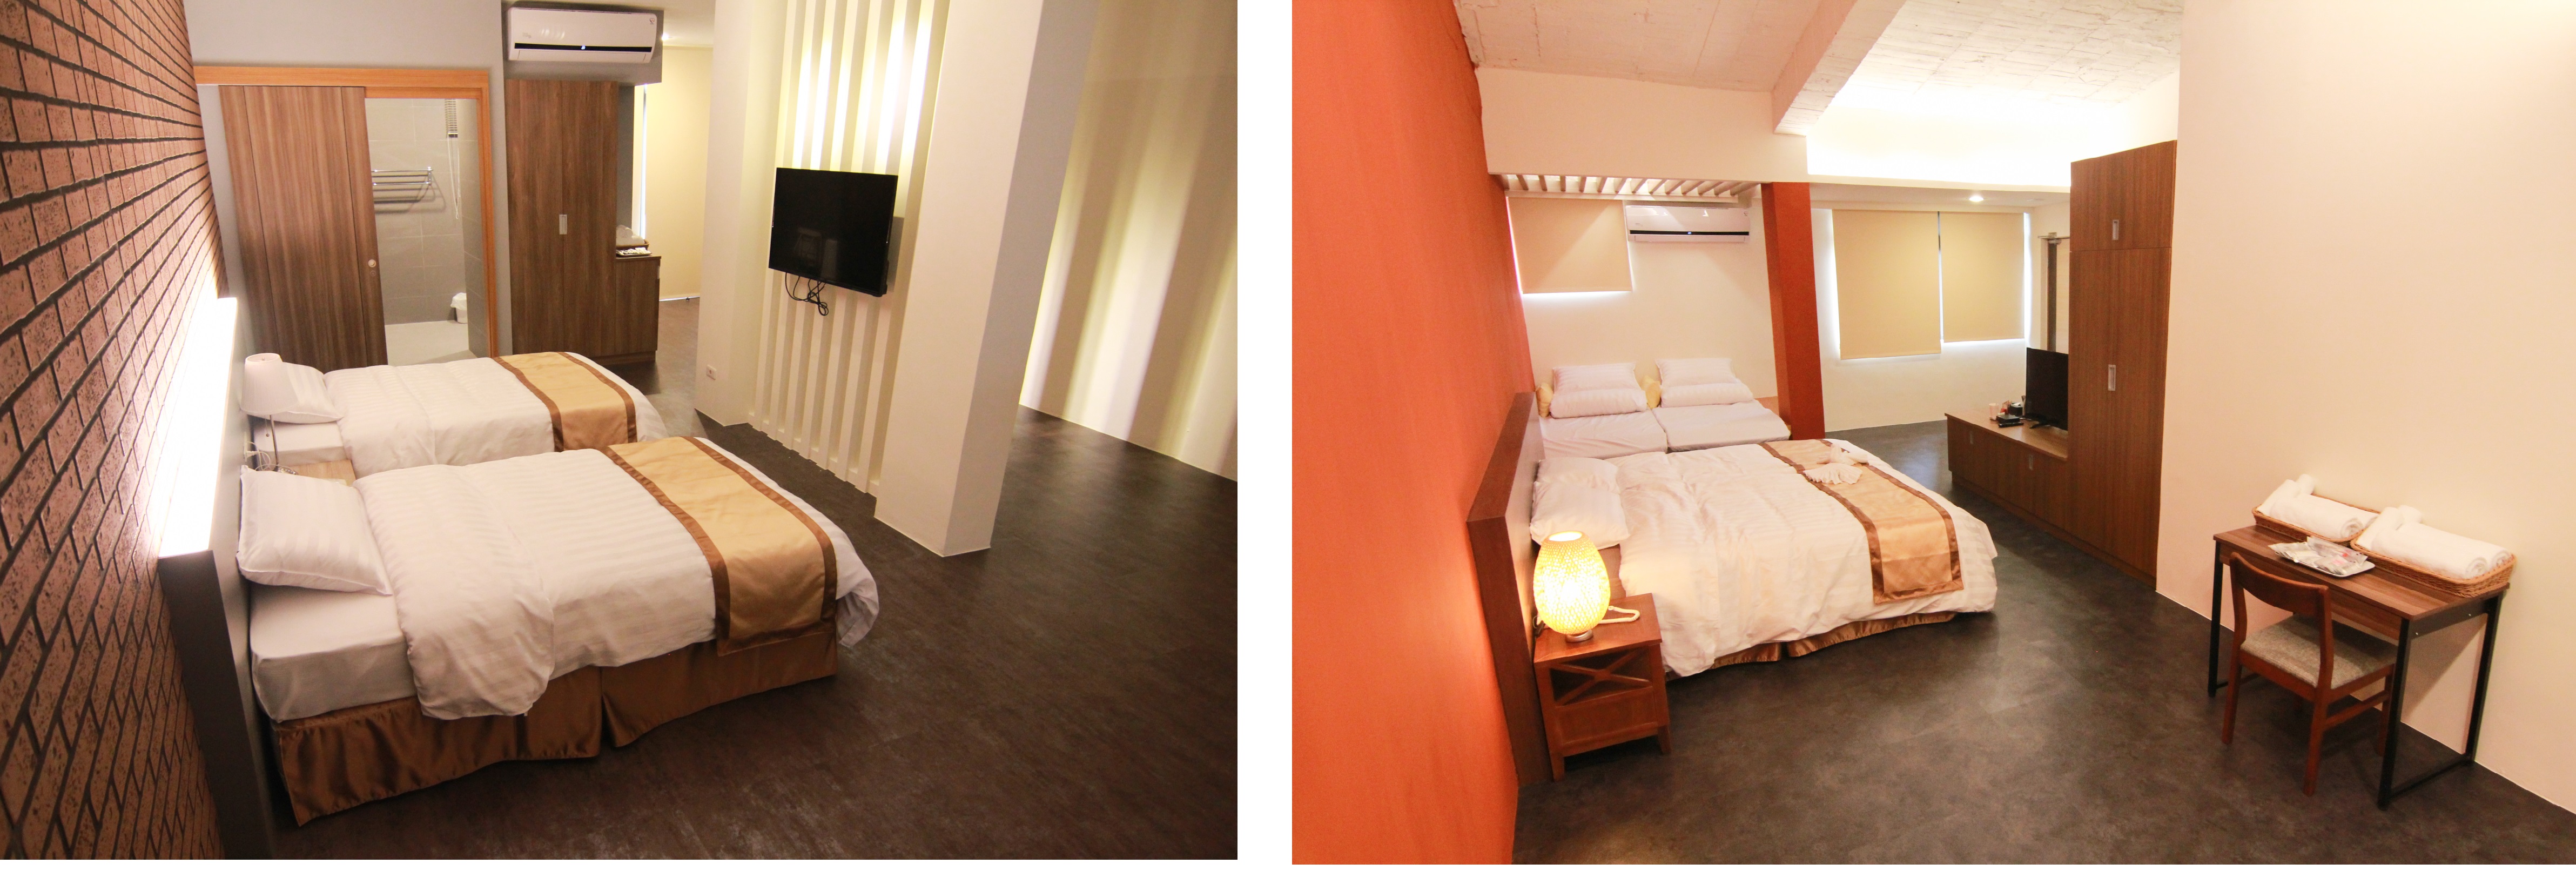 圖左為觀光會館埔風房、右為喜樂房，提供精緻住宿服務品質